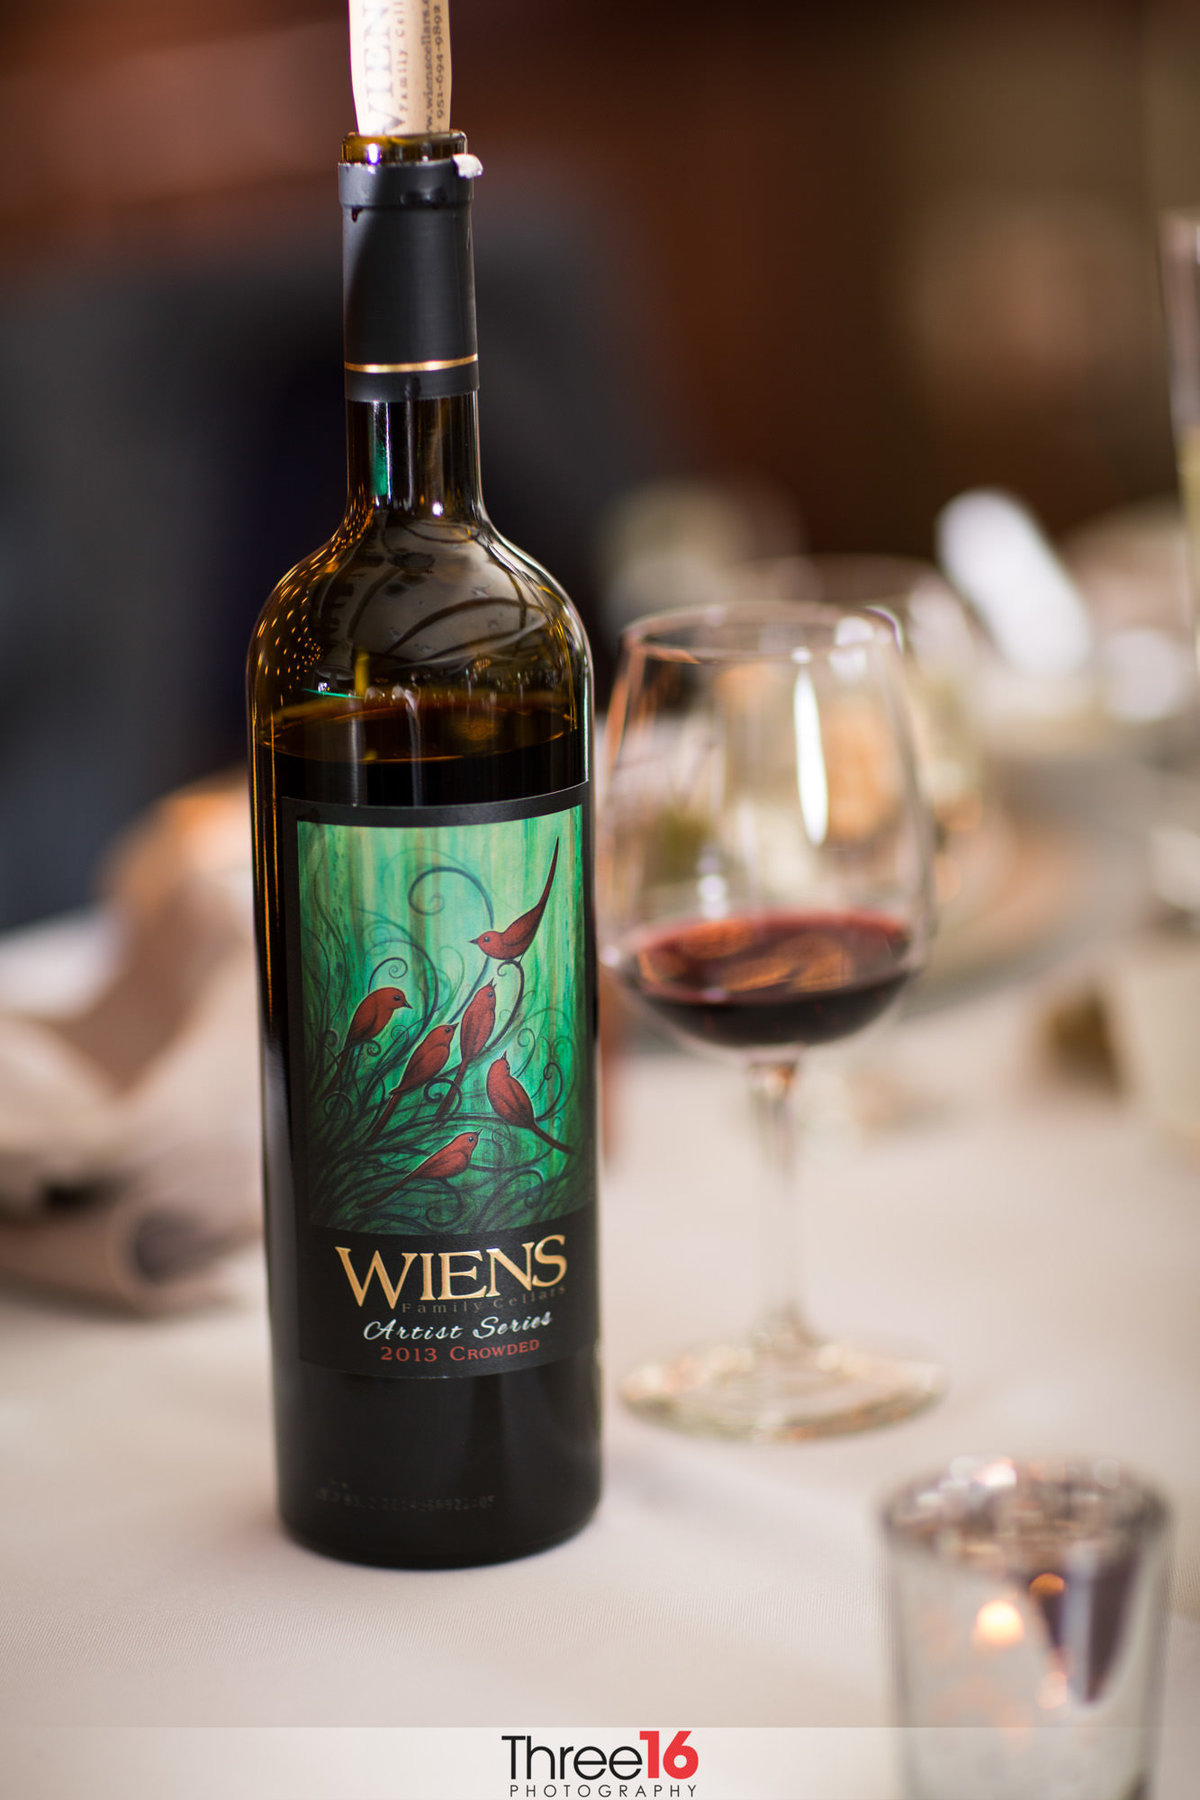 Wiens bottle of wine at Wiens Family Cellars